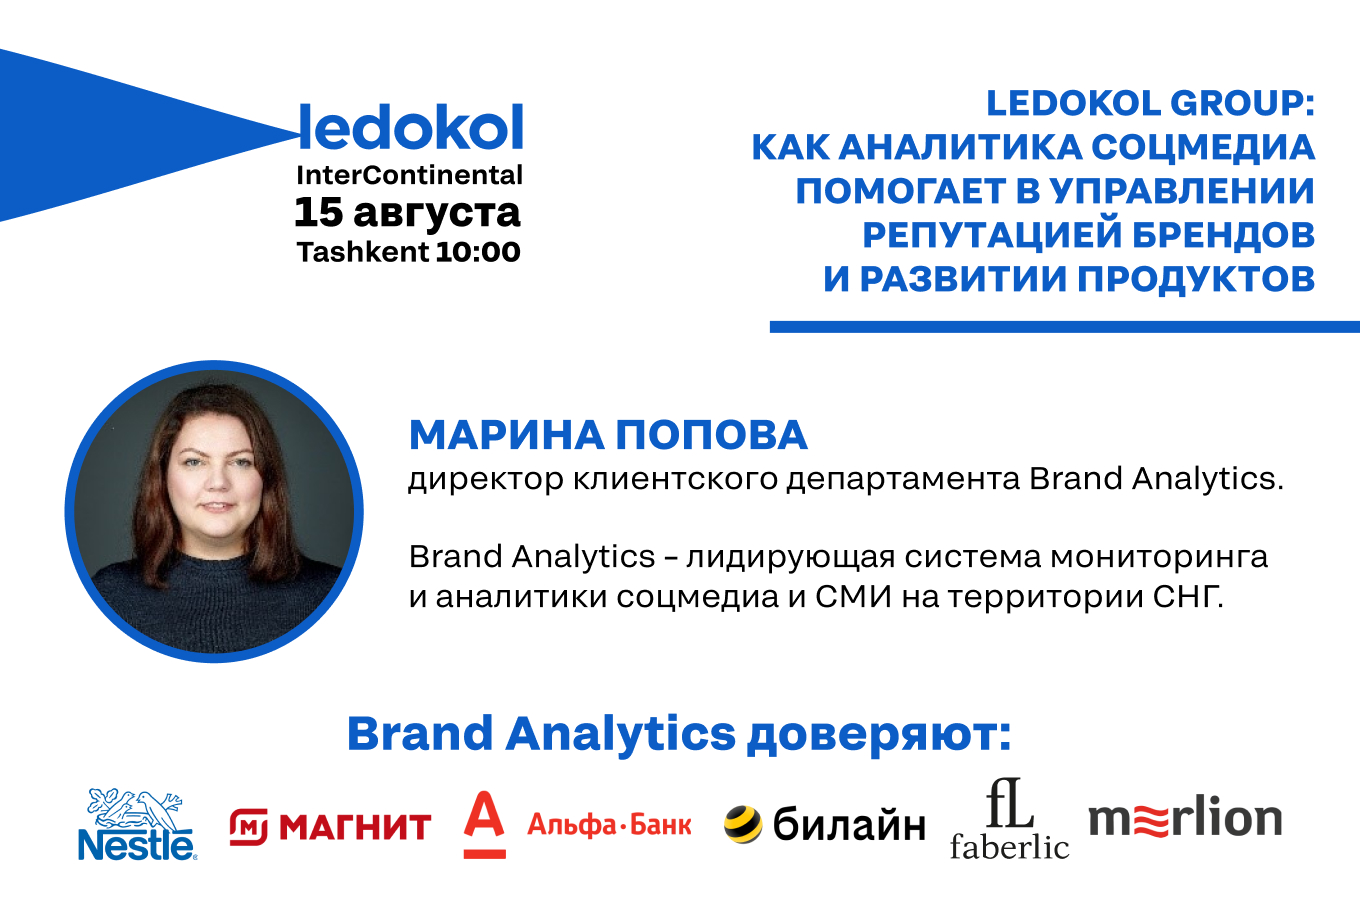 Ledokol Group: Как аналитика соцмедиа помогает в управлении репутацией брендов и развитии продуктов